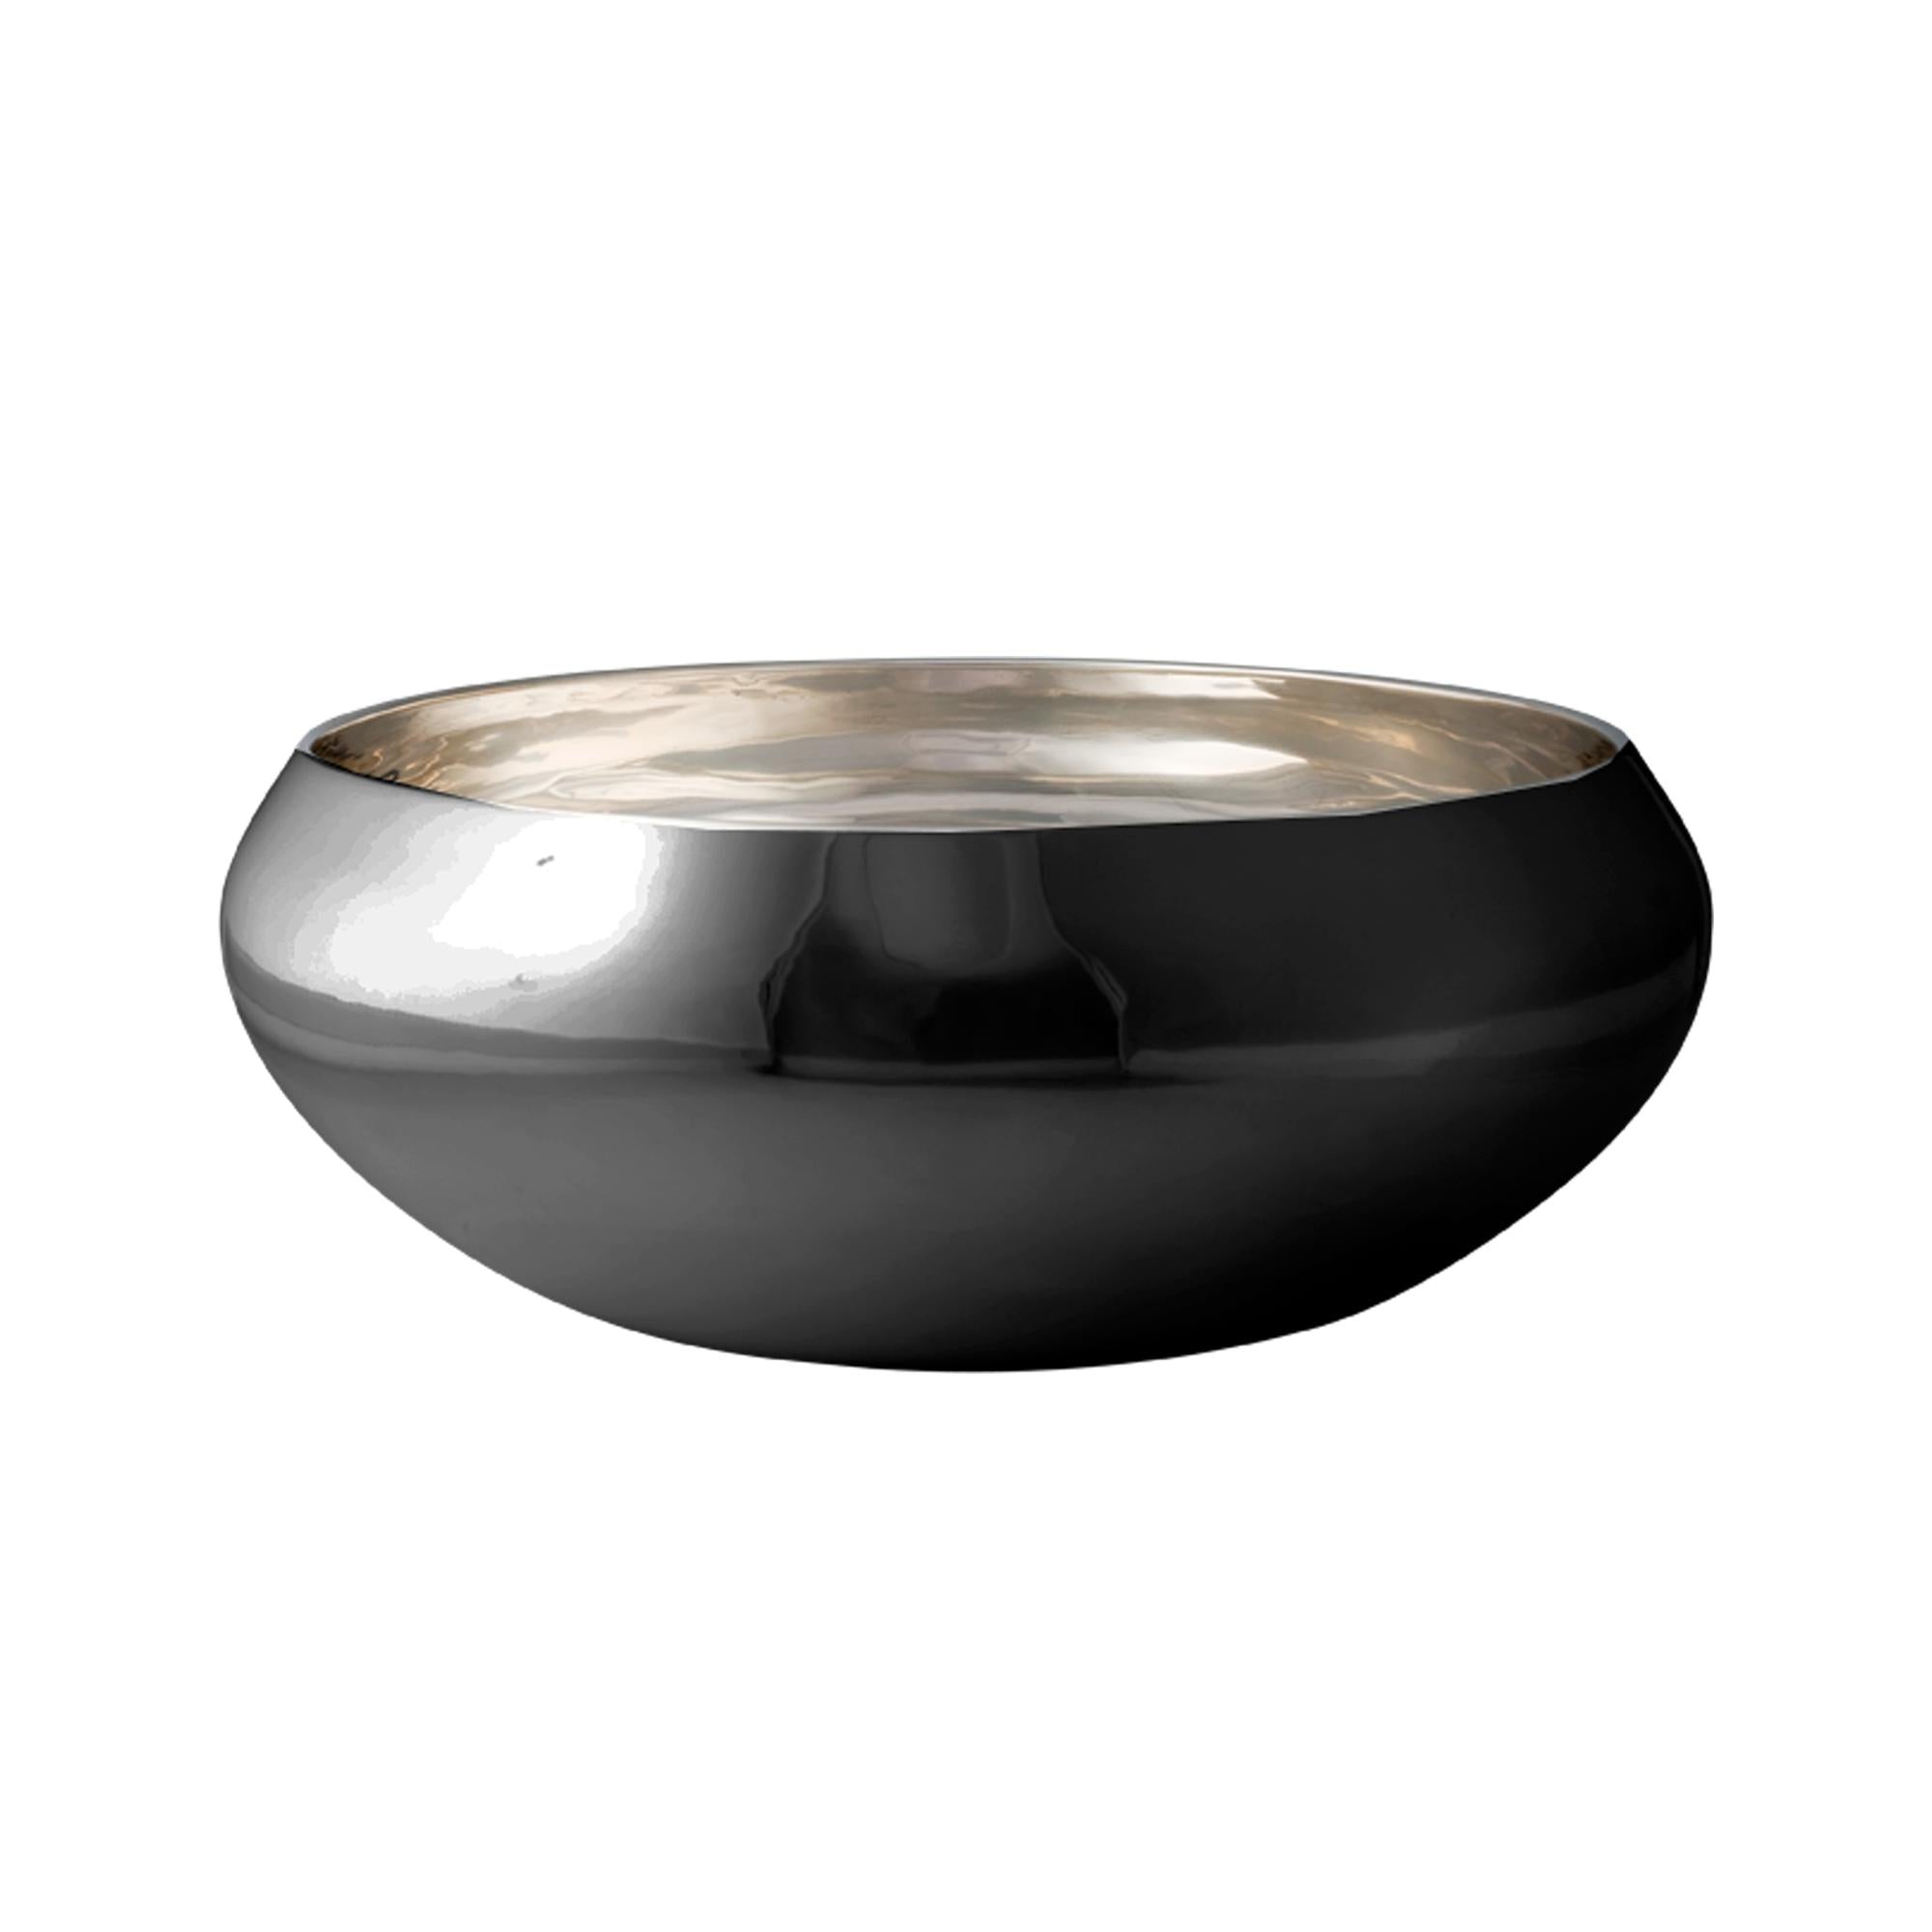 Kay BoJesen Nest Bowl wykonana z czarnej stali, mała